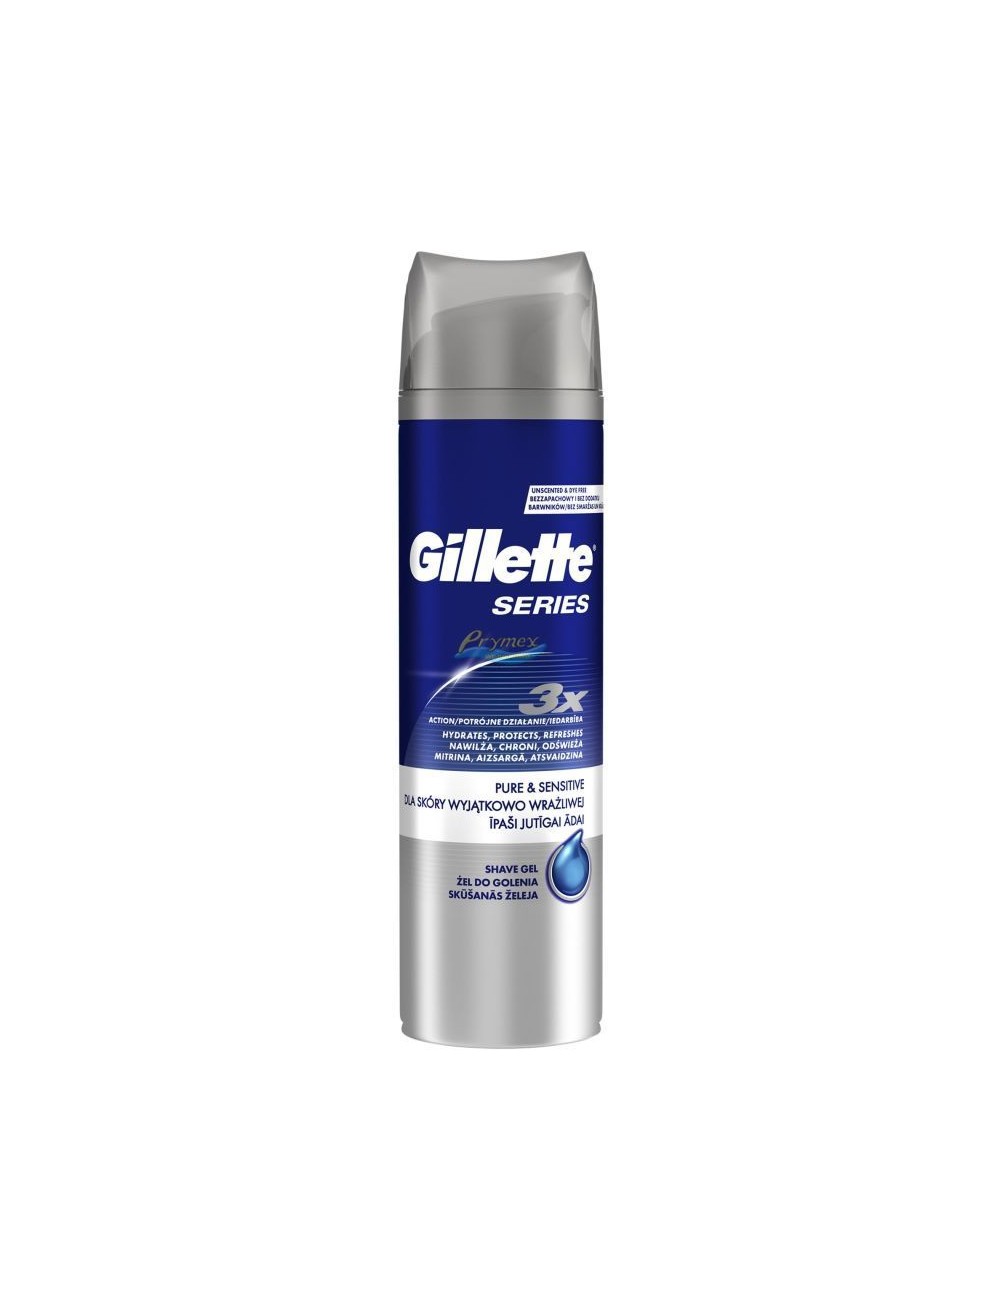 Gillette Series 3x Pure & Sensitive Żel do Golenia dla Skóry Wyjątkowo Wrażliwej 200 ml